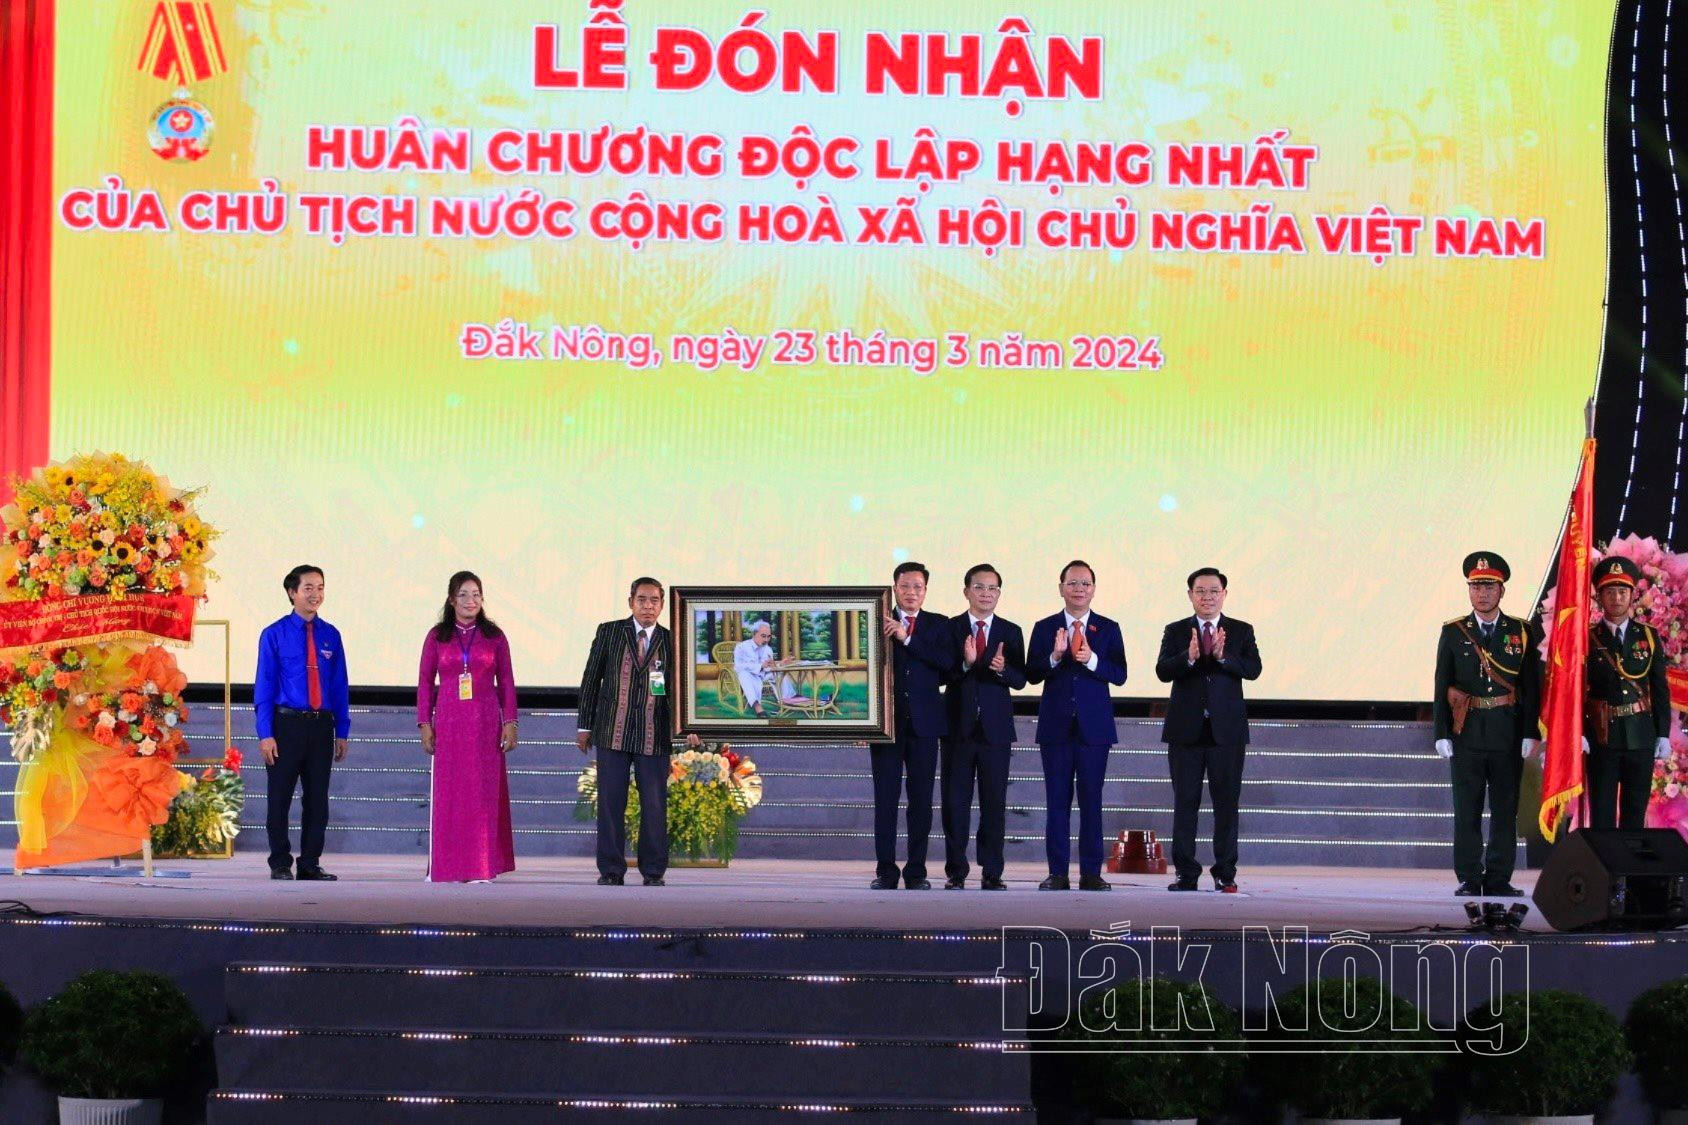 Chủ tịch Quốc hội Vương Đình Huệ trao tặng bức tranh Chủ tịch Hồ Chí Minh cho tỉnh Đắk Nông.